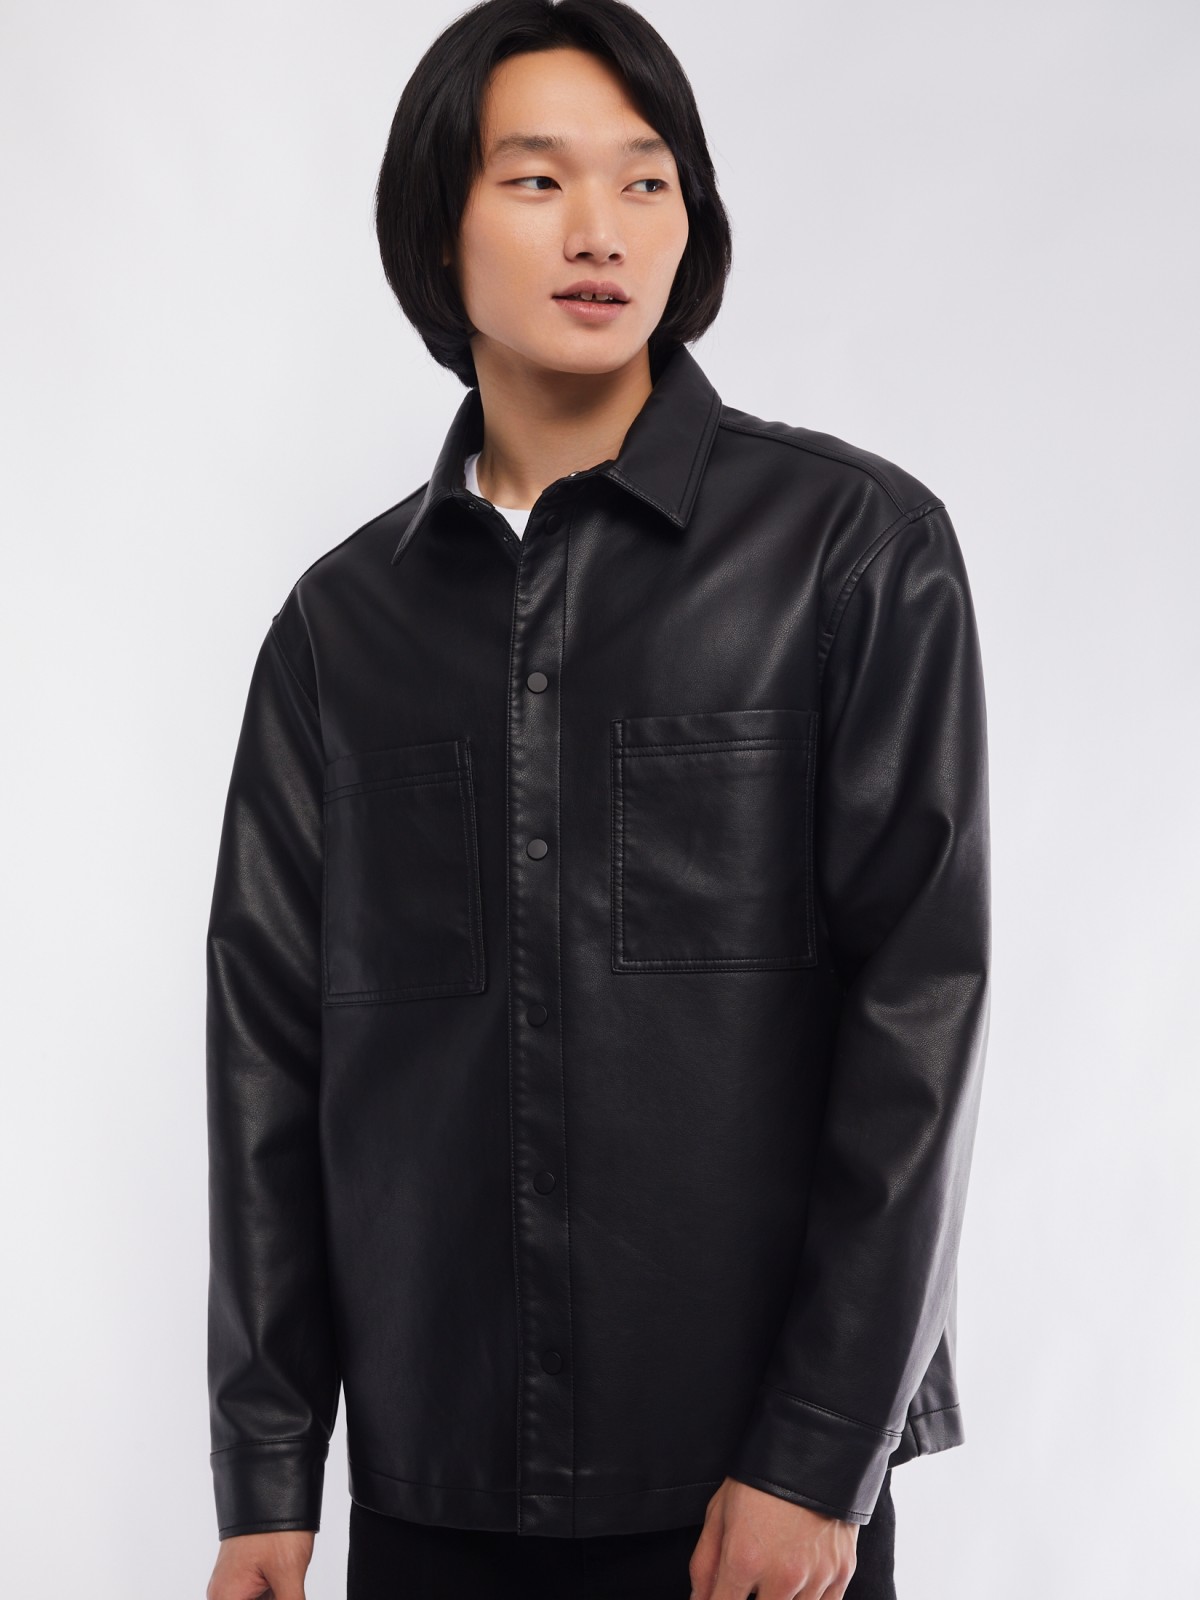 Куртка-ветровка zolla 014135650064, цвет черный, размер S - фото 4